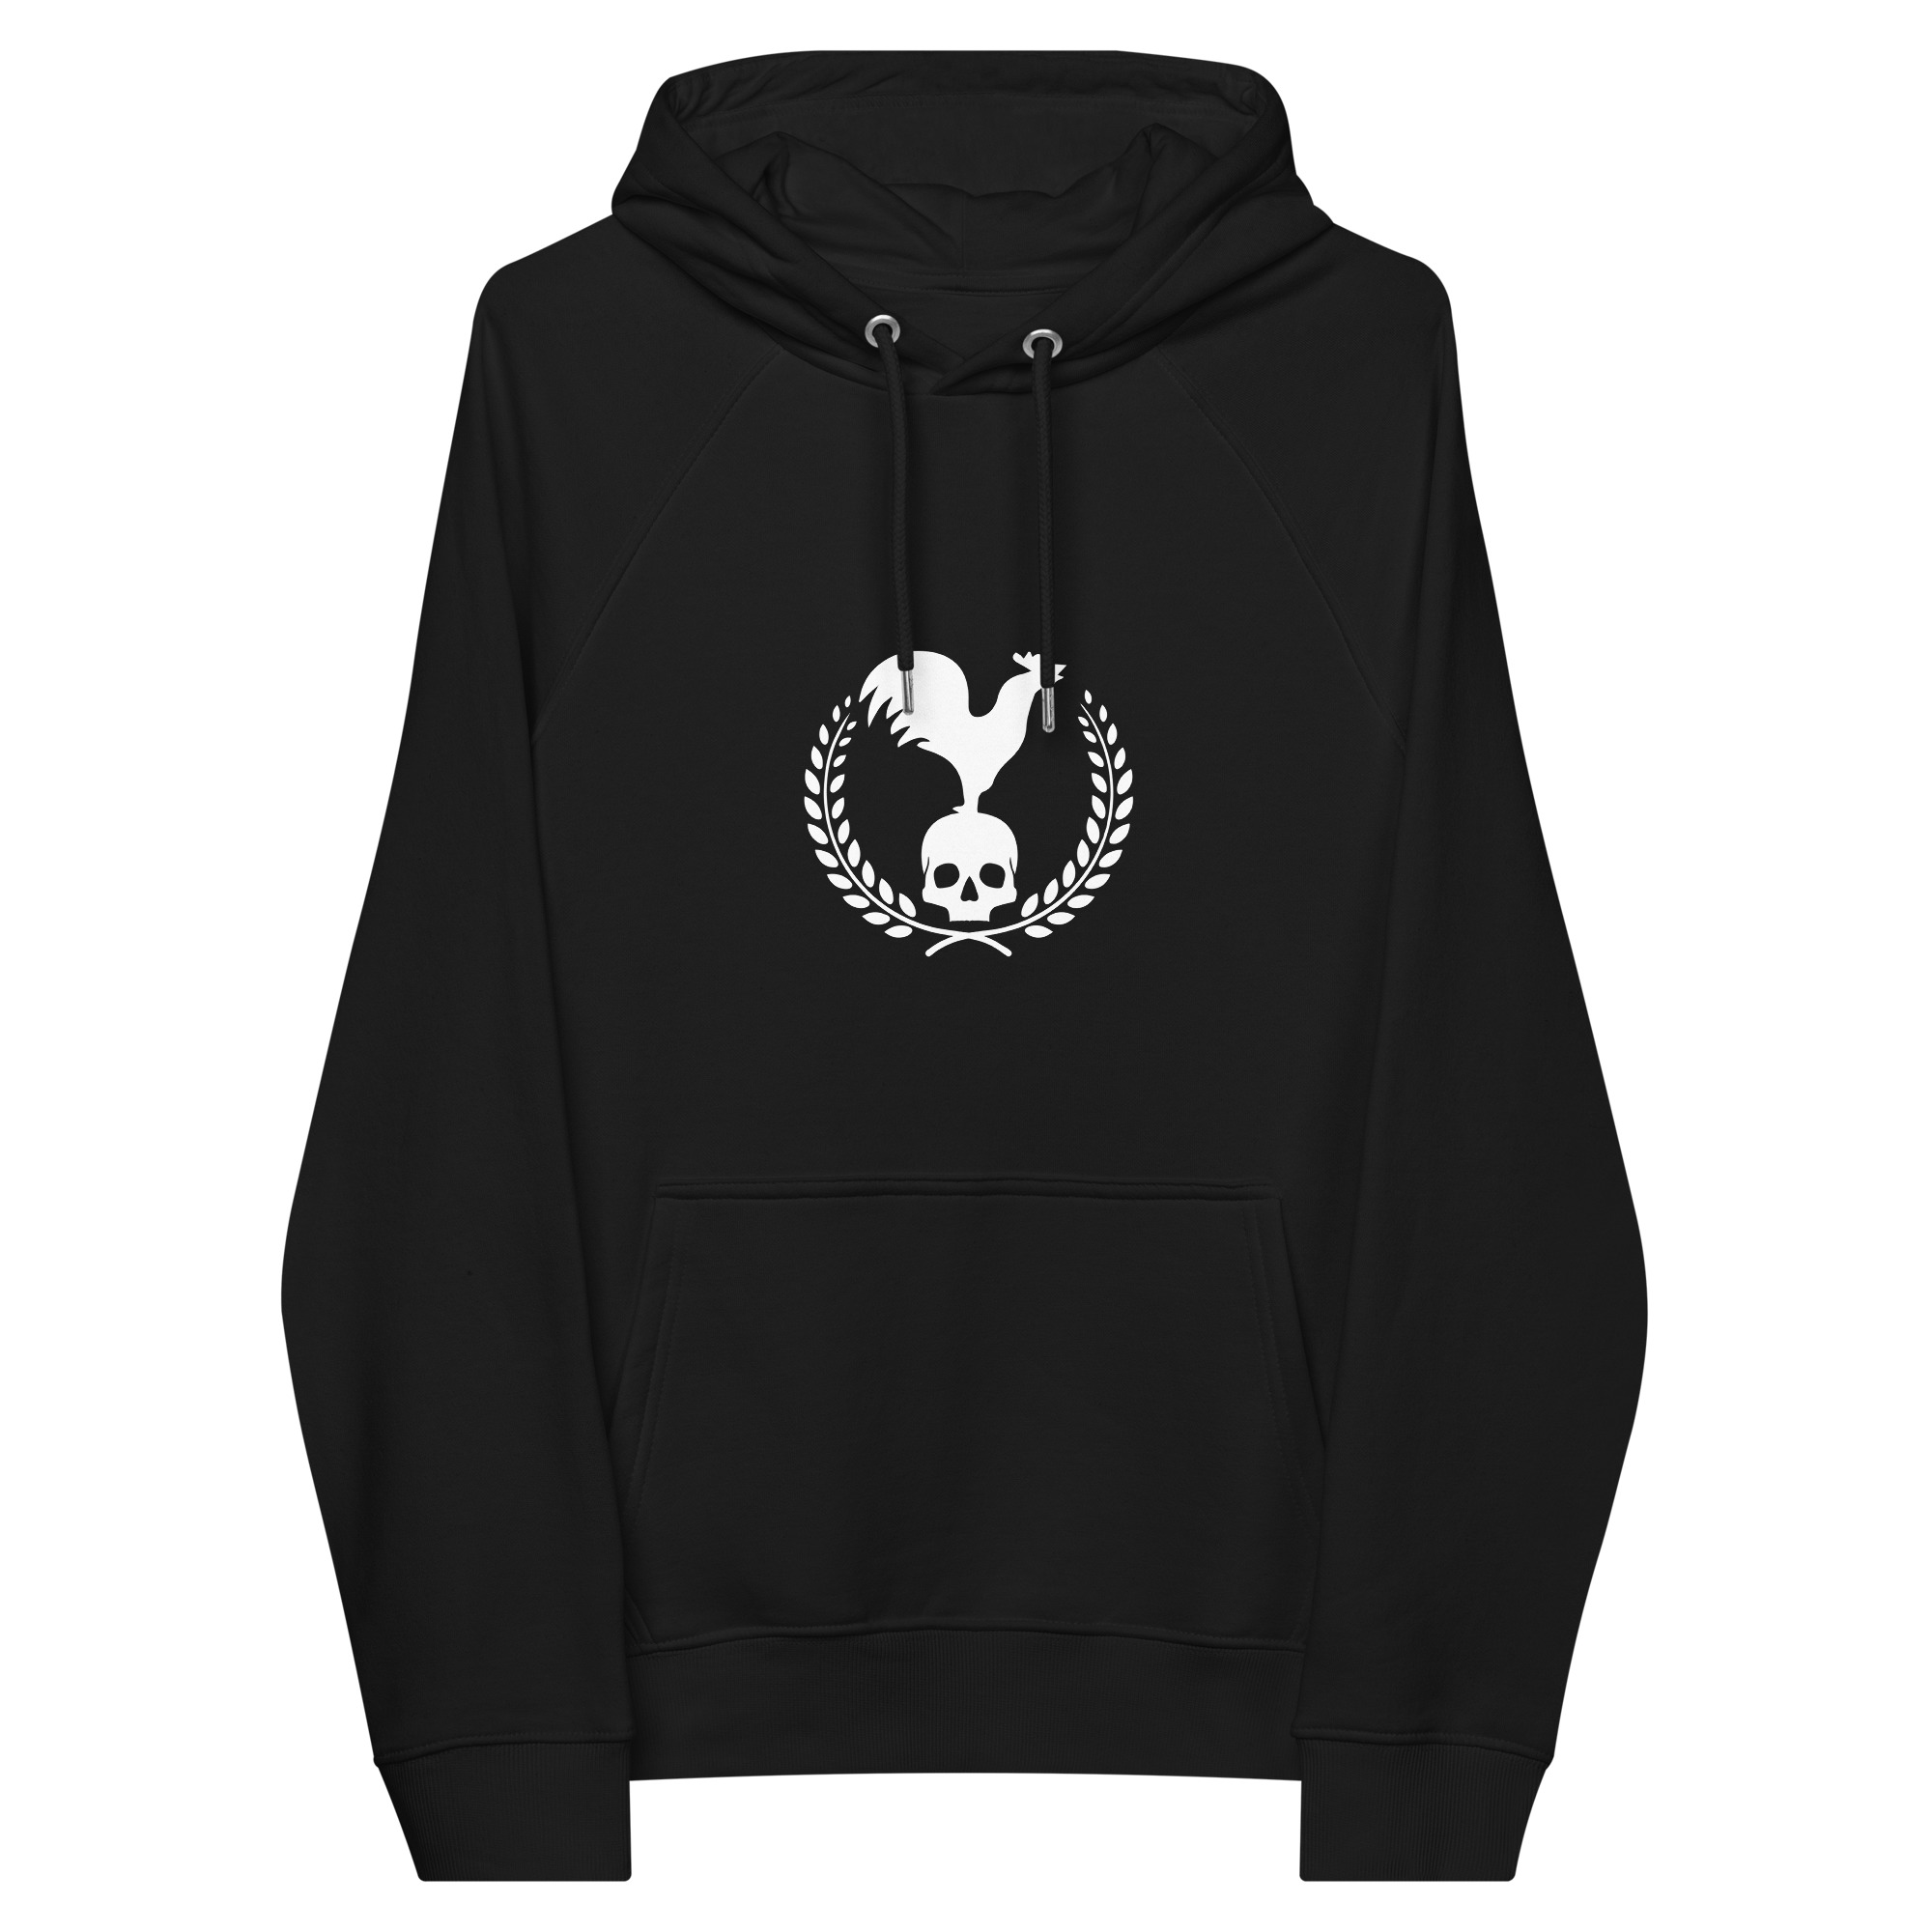 unisex-eco-raglan-hoodie-black-front-655bd3f42c4d6.jpg